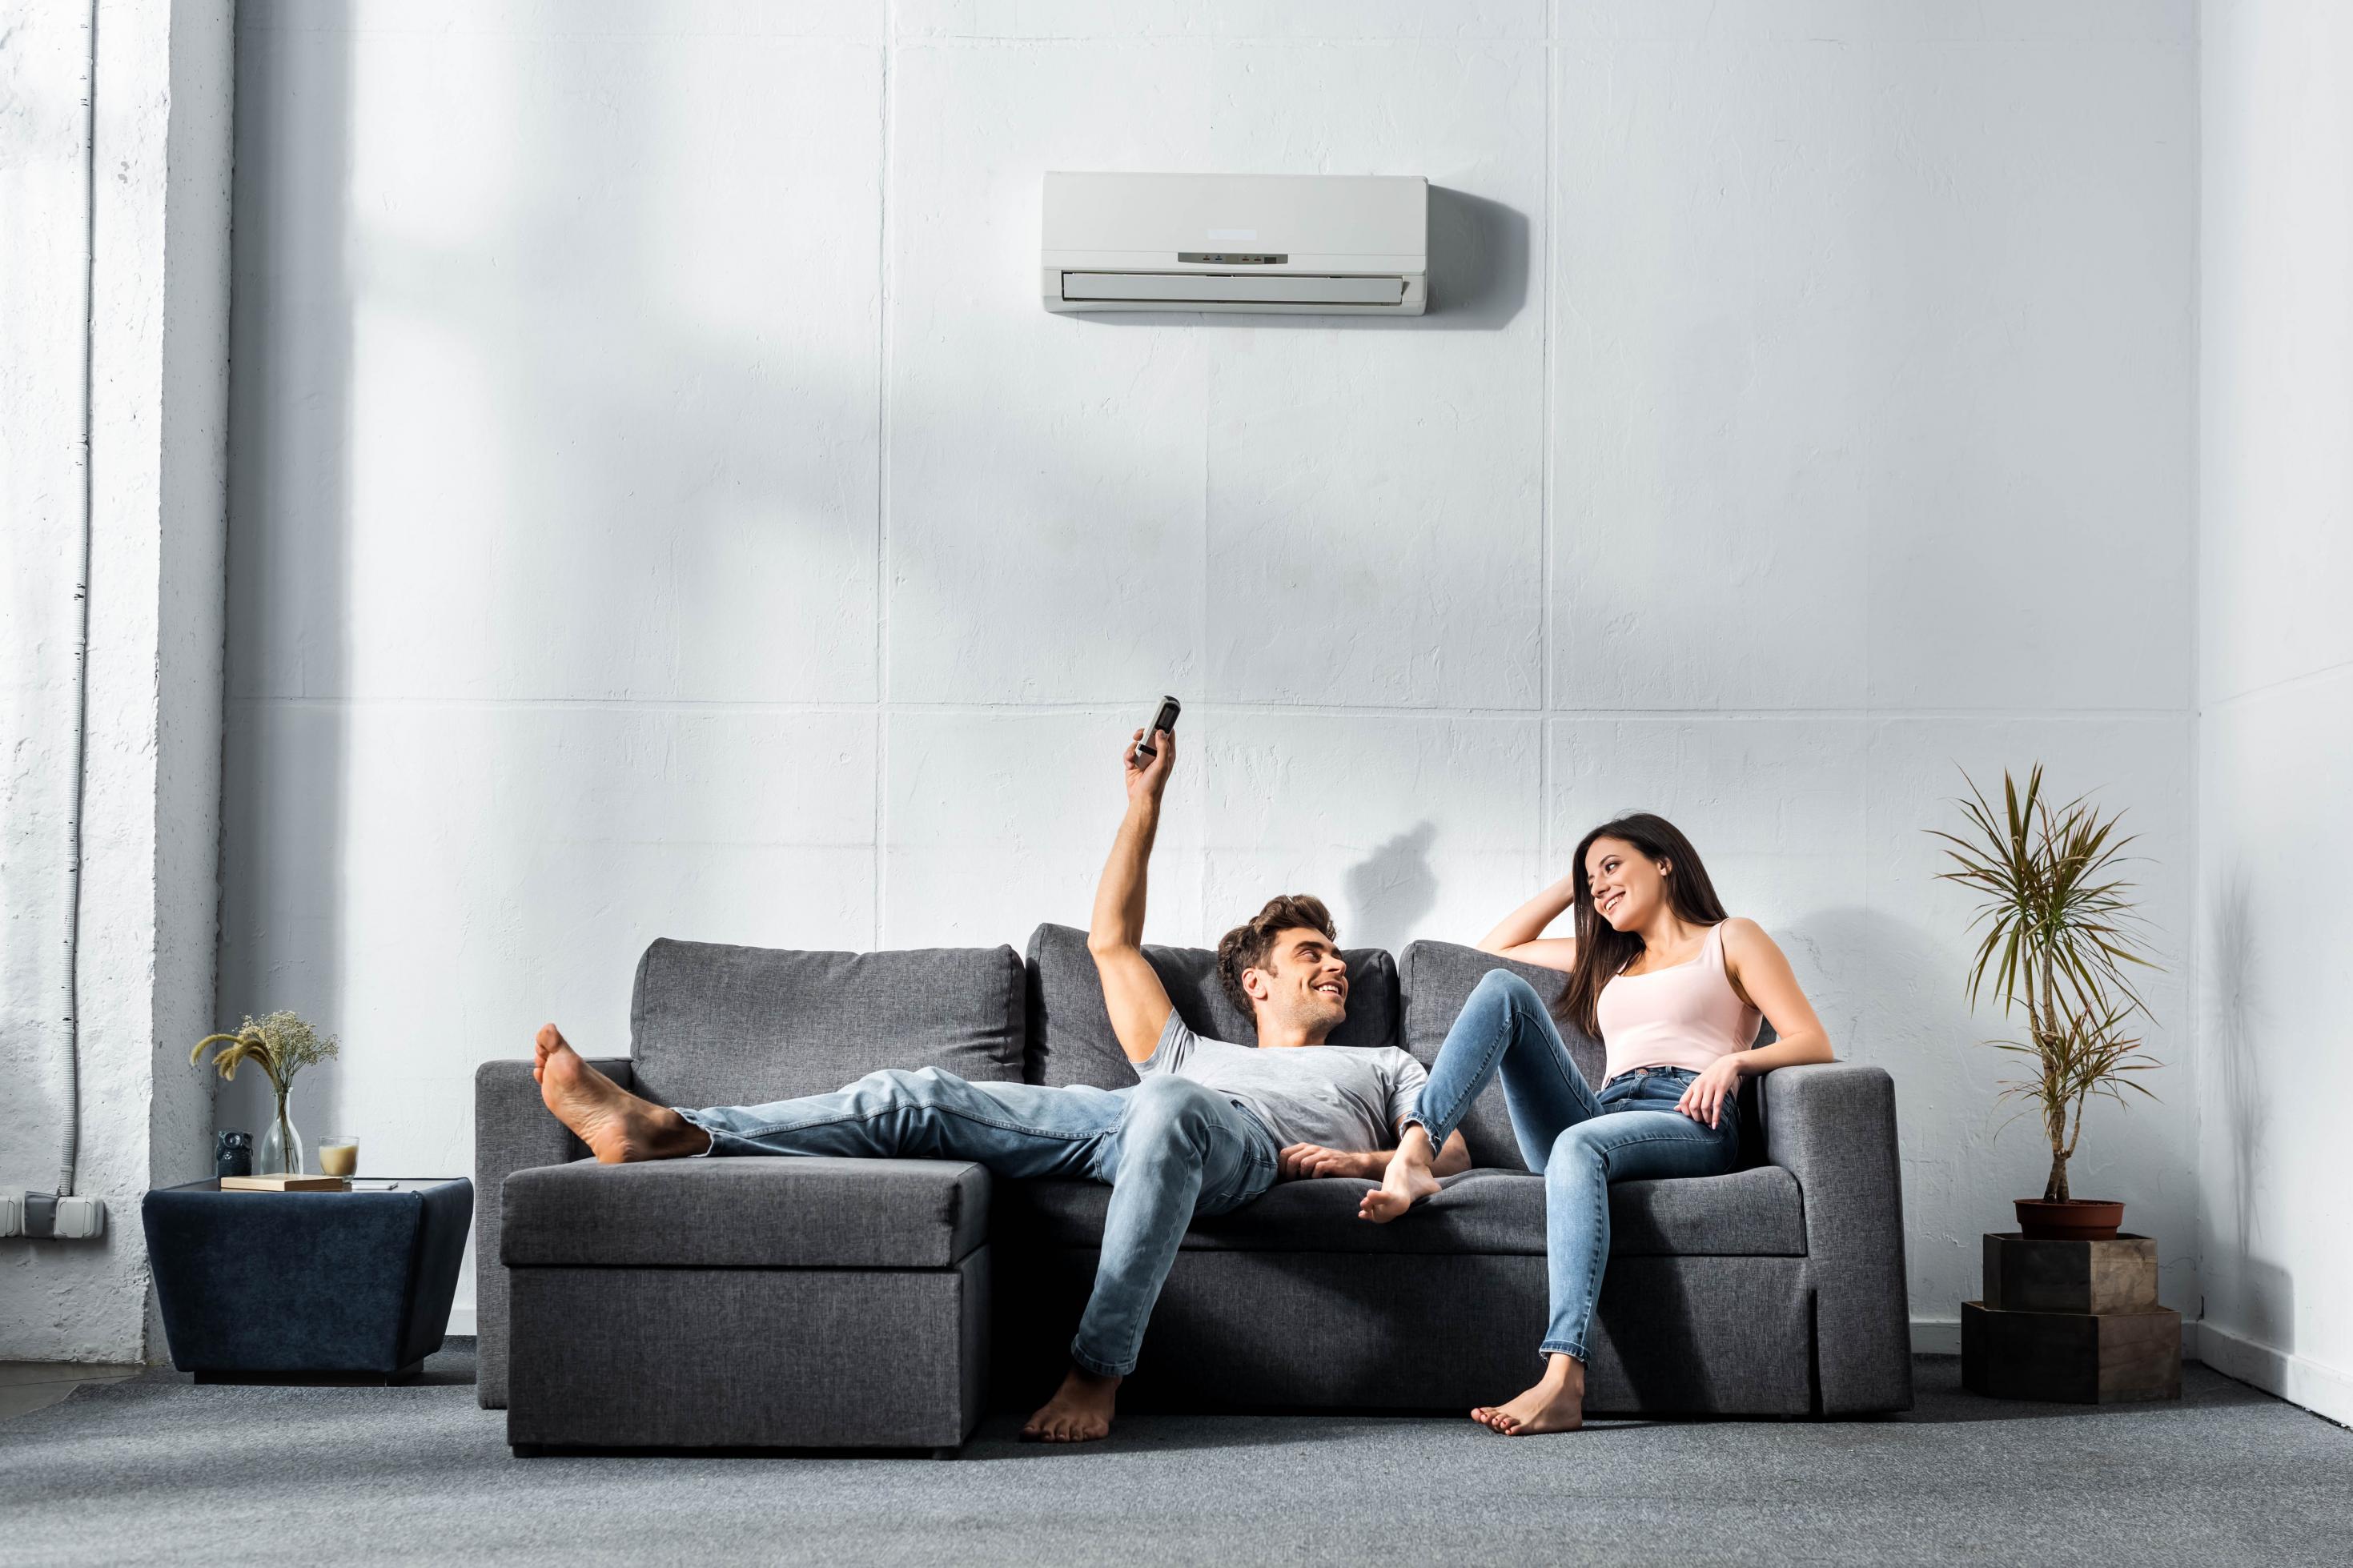 Innengerät einer Klimaanlage, montiert an einer Wohnungswand. Darunter ein junges Paar auf einem grauen Sofa, links und rechts daneben Grünfplanzen.